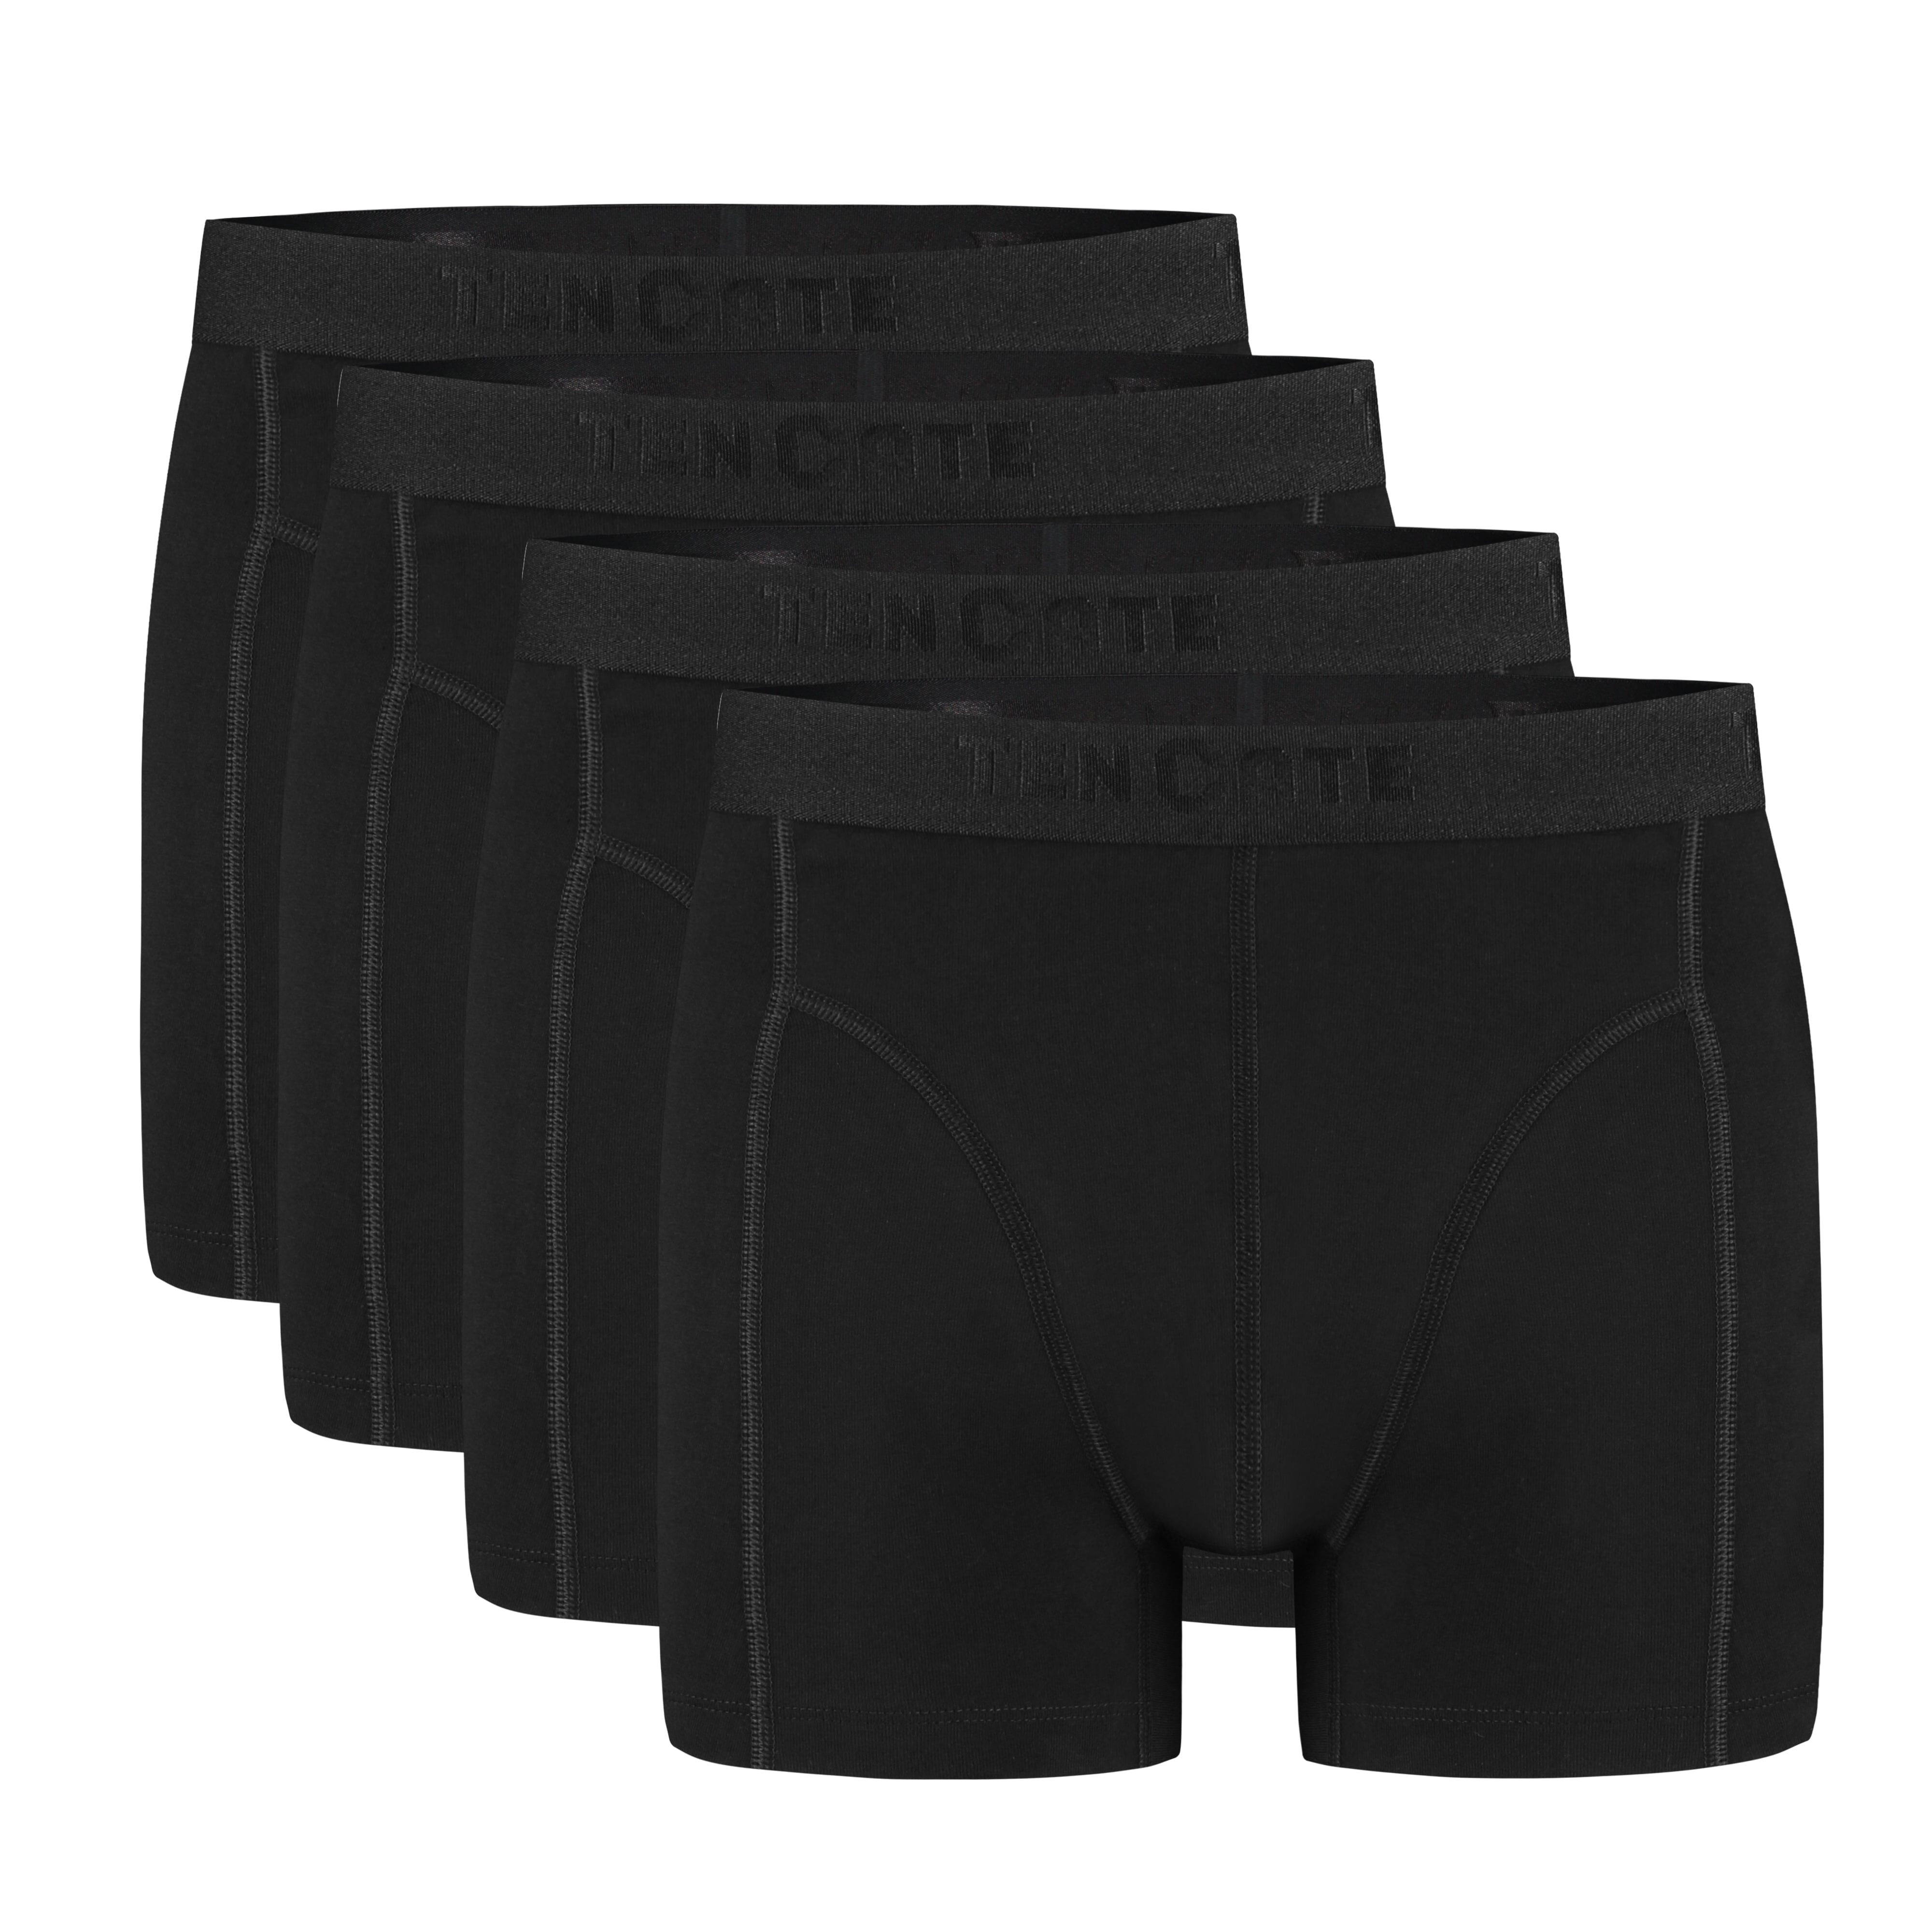 Ten Cate - 32387 - Basic Men Shorts 4-pack - Black Short Ten Cate 